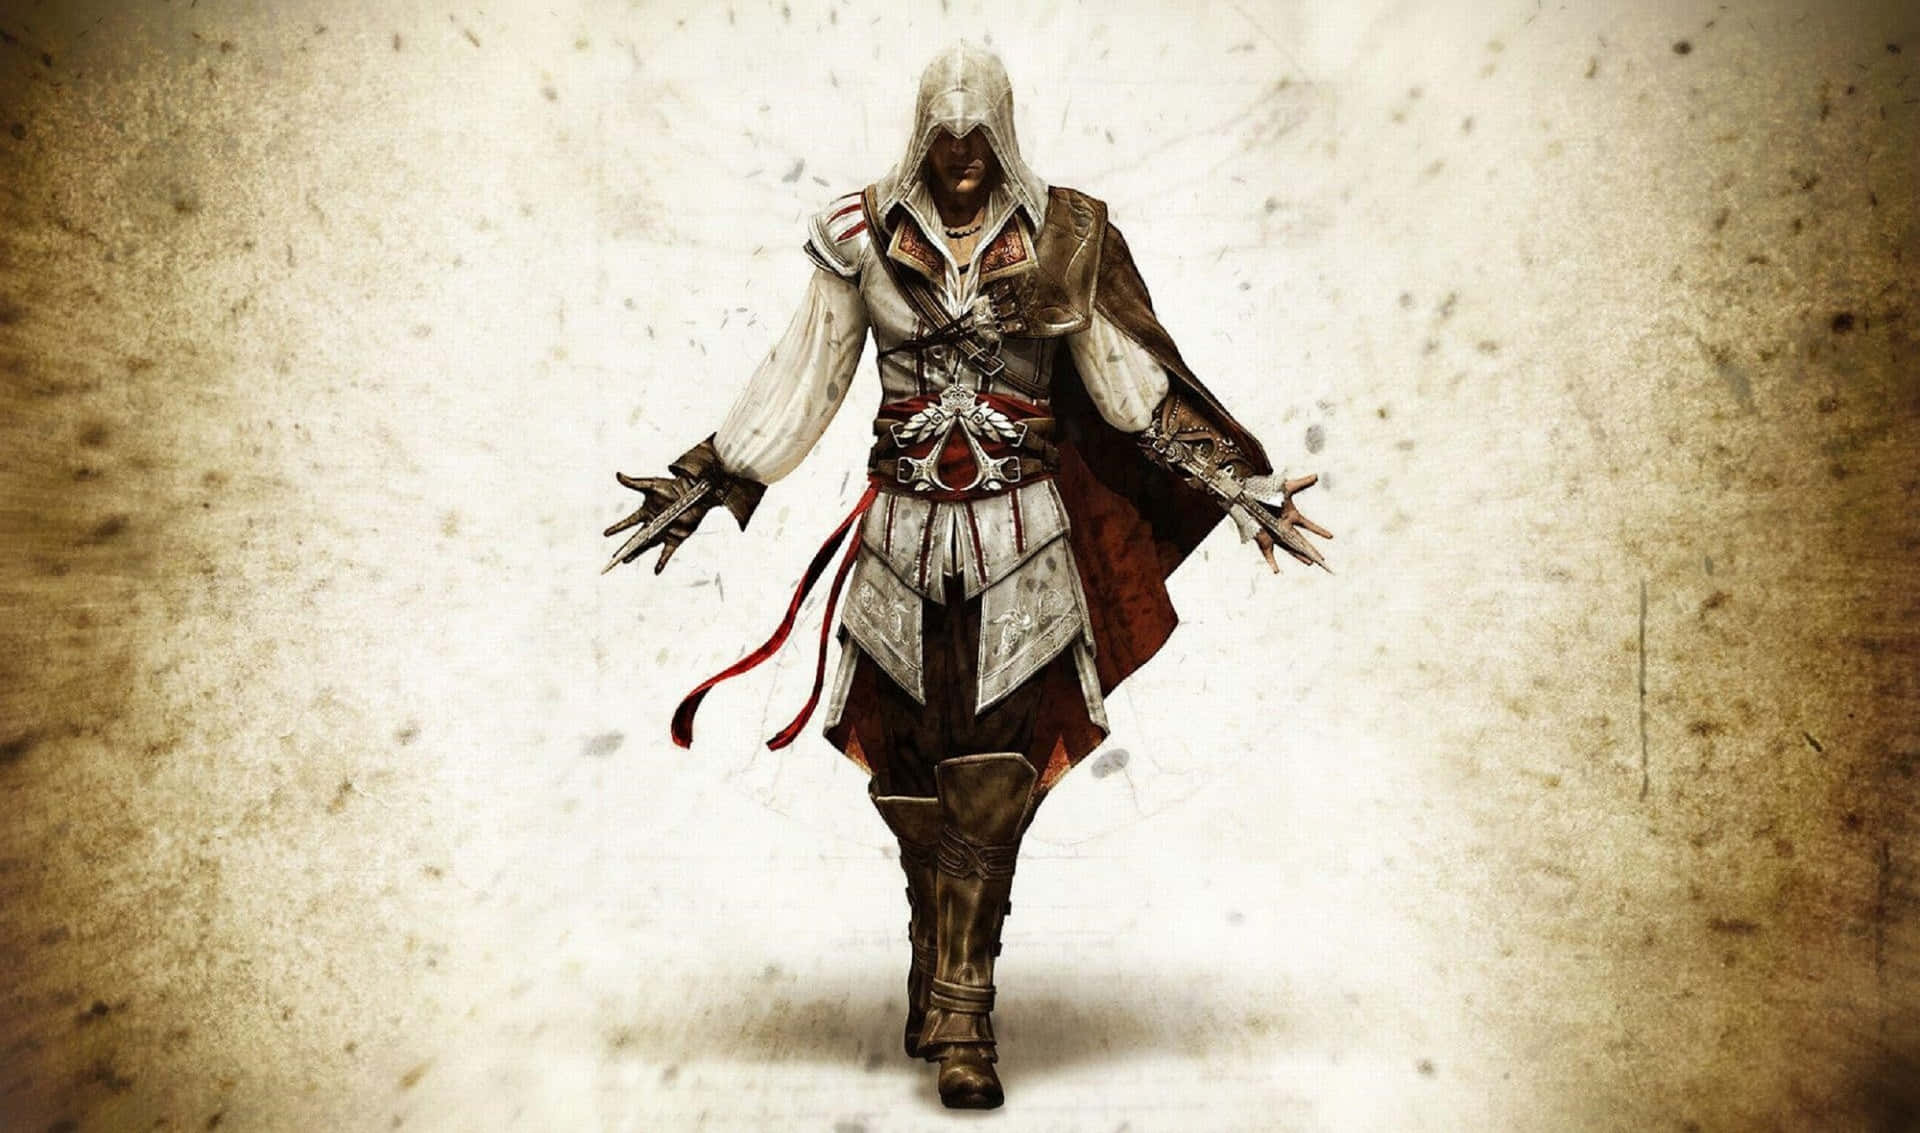 2440x1440bakgrundsbild Av Ezio Auditore Från Assassin's Creed Odyssey.